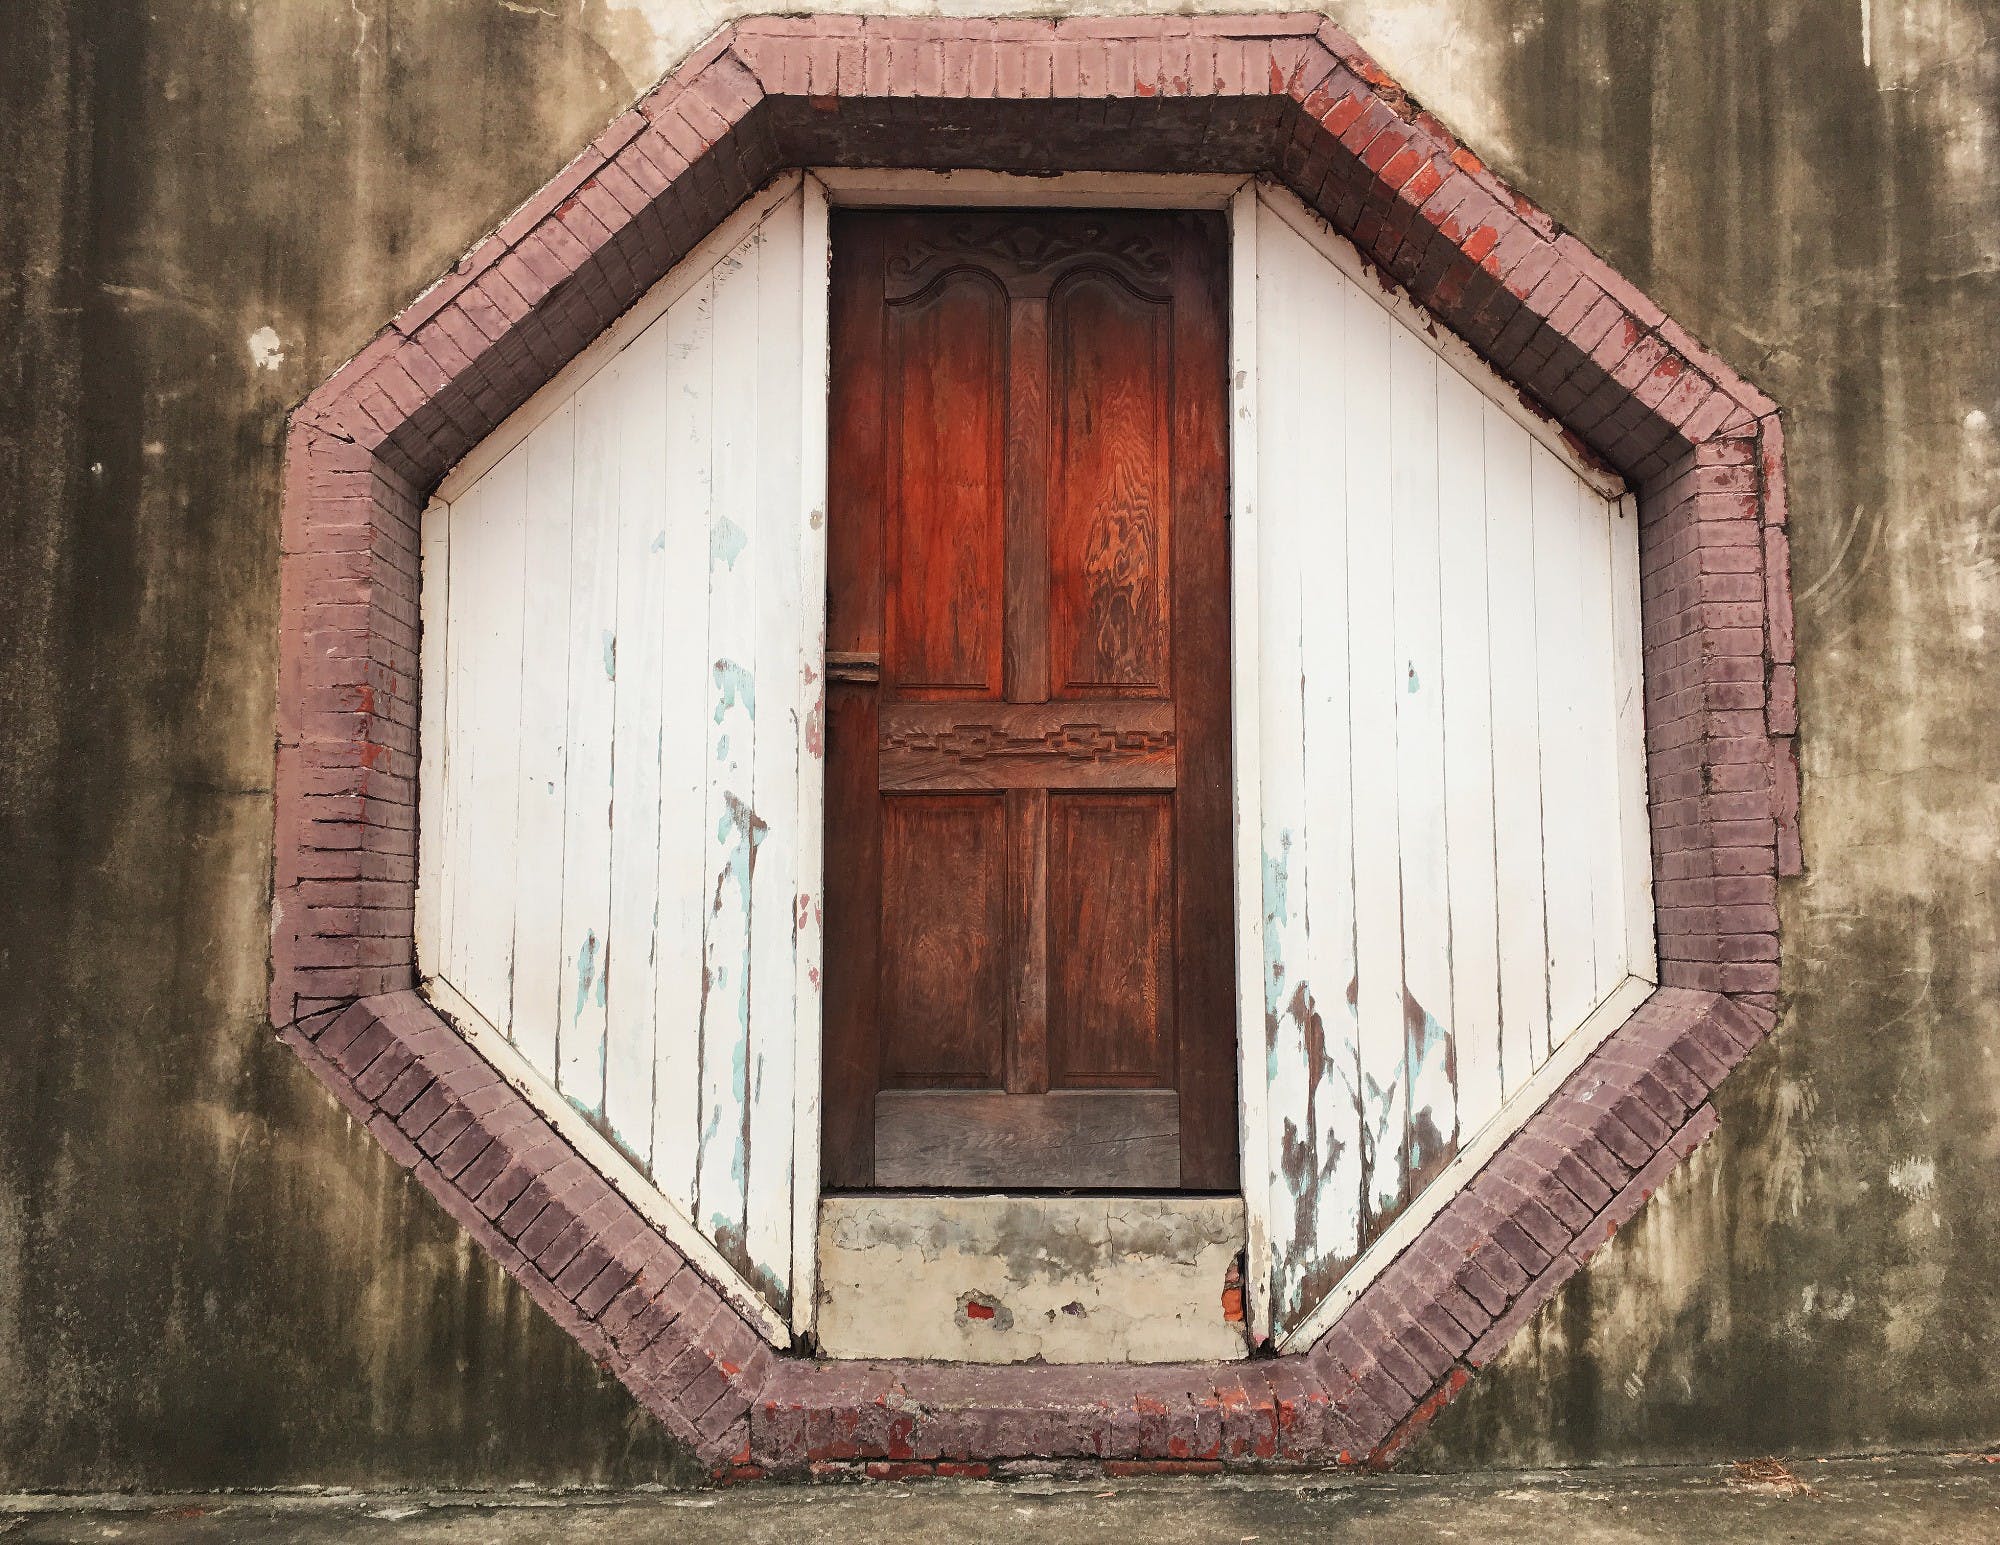 Bagua Doorway in Tainan